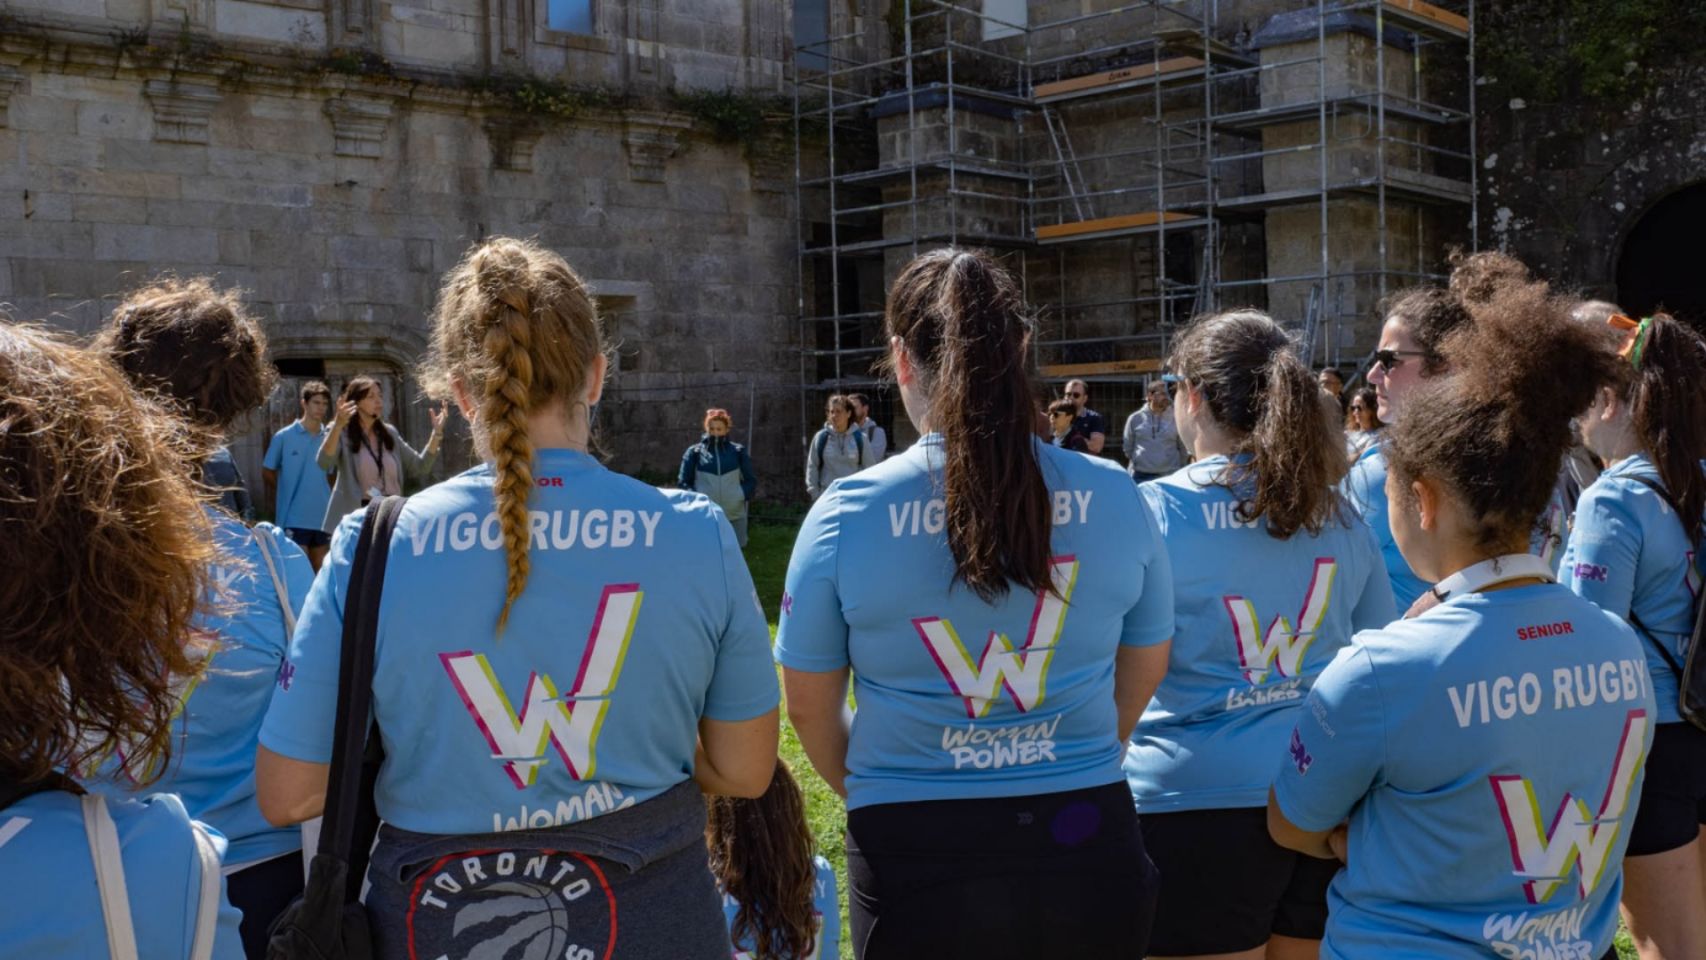 Jugadoras del Kaleido Vigo Rugby asisten a la visita guiada en el Mosteiro de Oia.